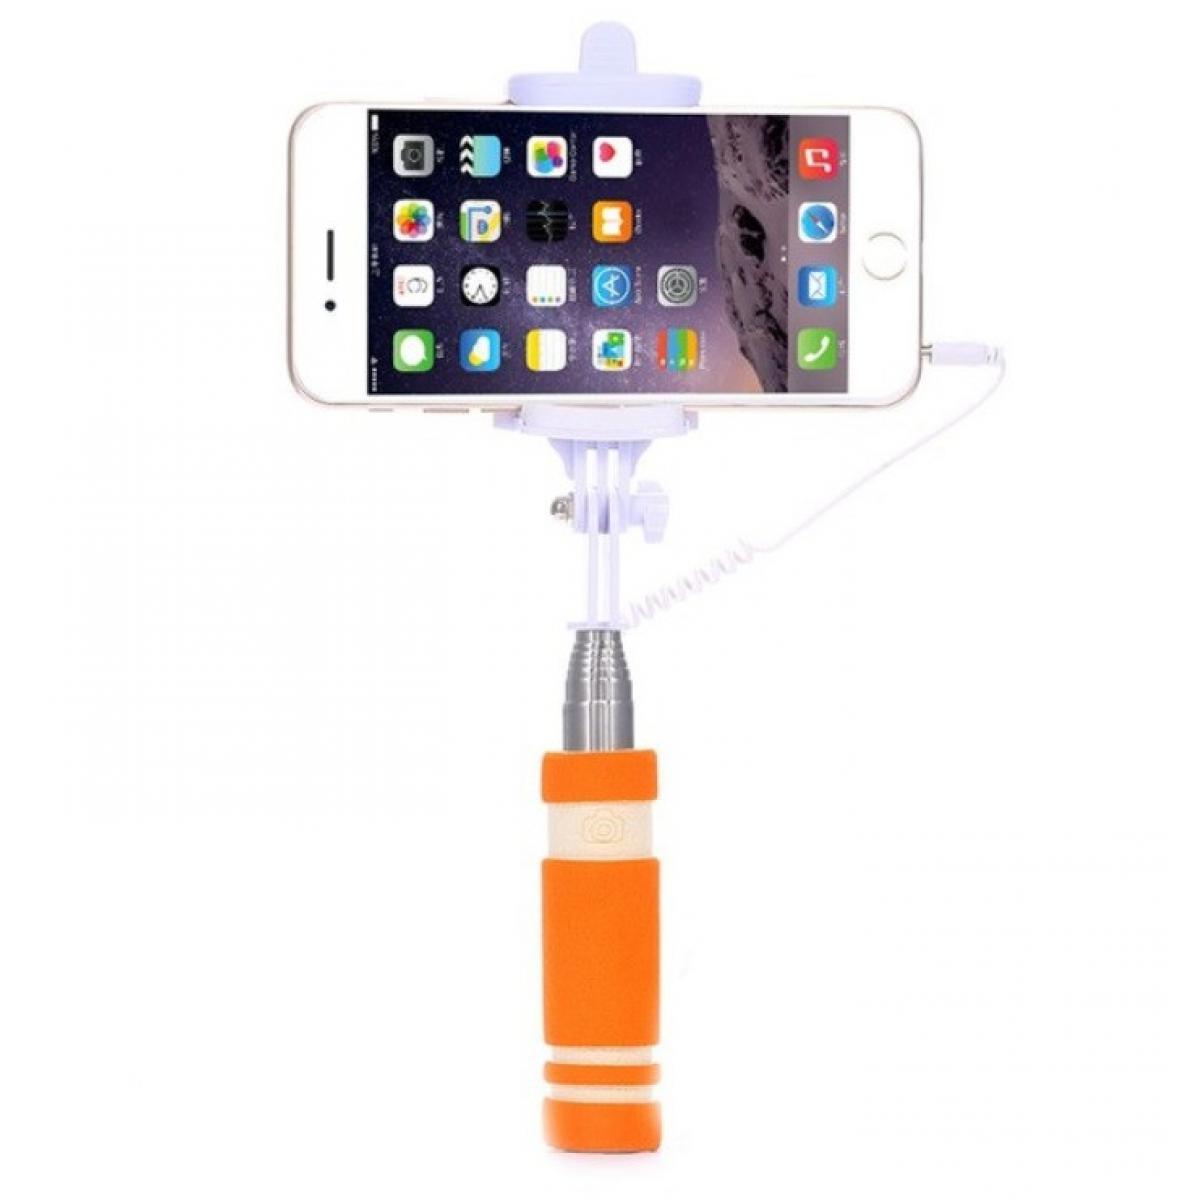 Shot - Mini Perche Selfie pour "SAMSUNG Galaxy A20" Smartphone avec Cable Jack Selfie Stick Android IOS Reglable Bouton Photo (ORANGE) - Autres accessoires smartphone